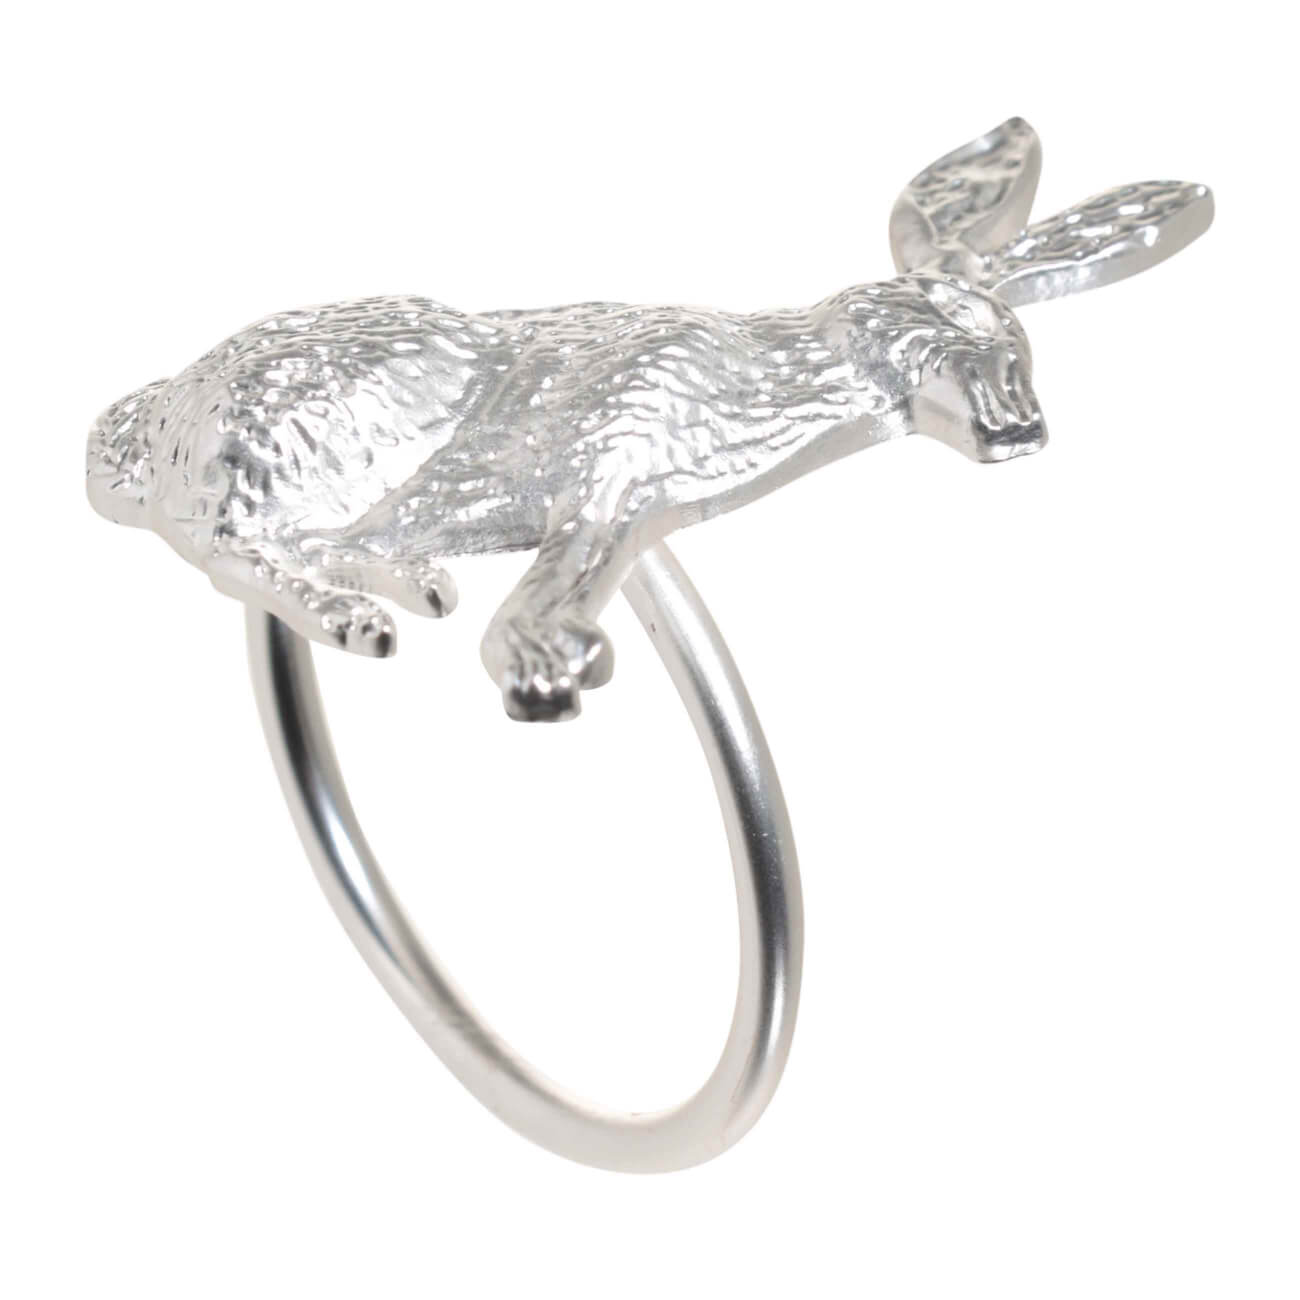 кольцо для салфеток 6 см металл серебристое ветка с листьями print Кольцо для салфеток, 5 см, металл, серебристое, Кролик, Pure Easter